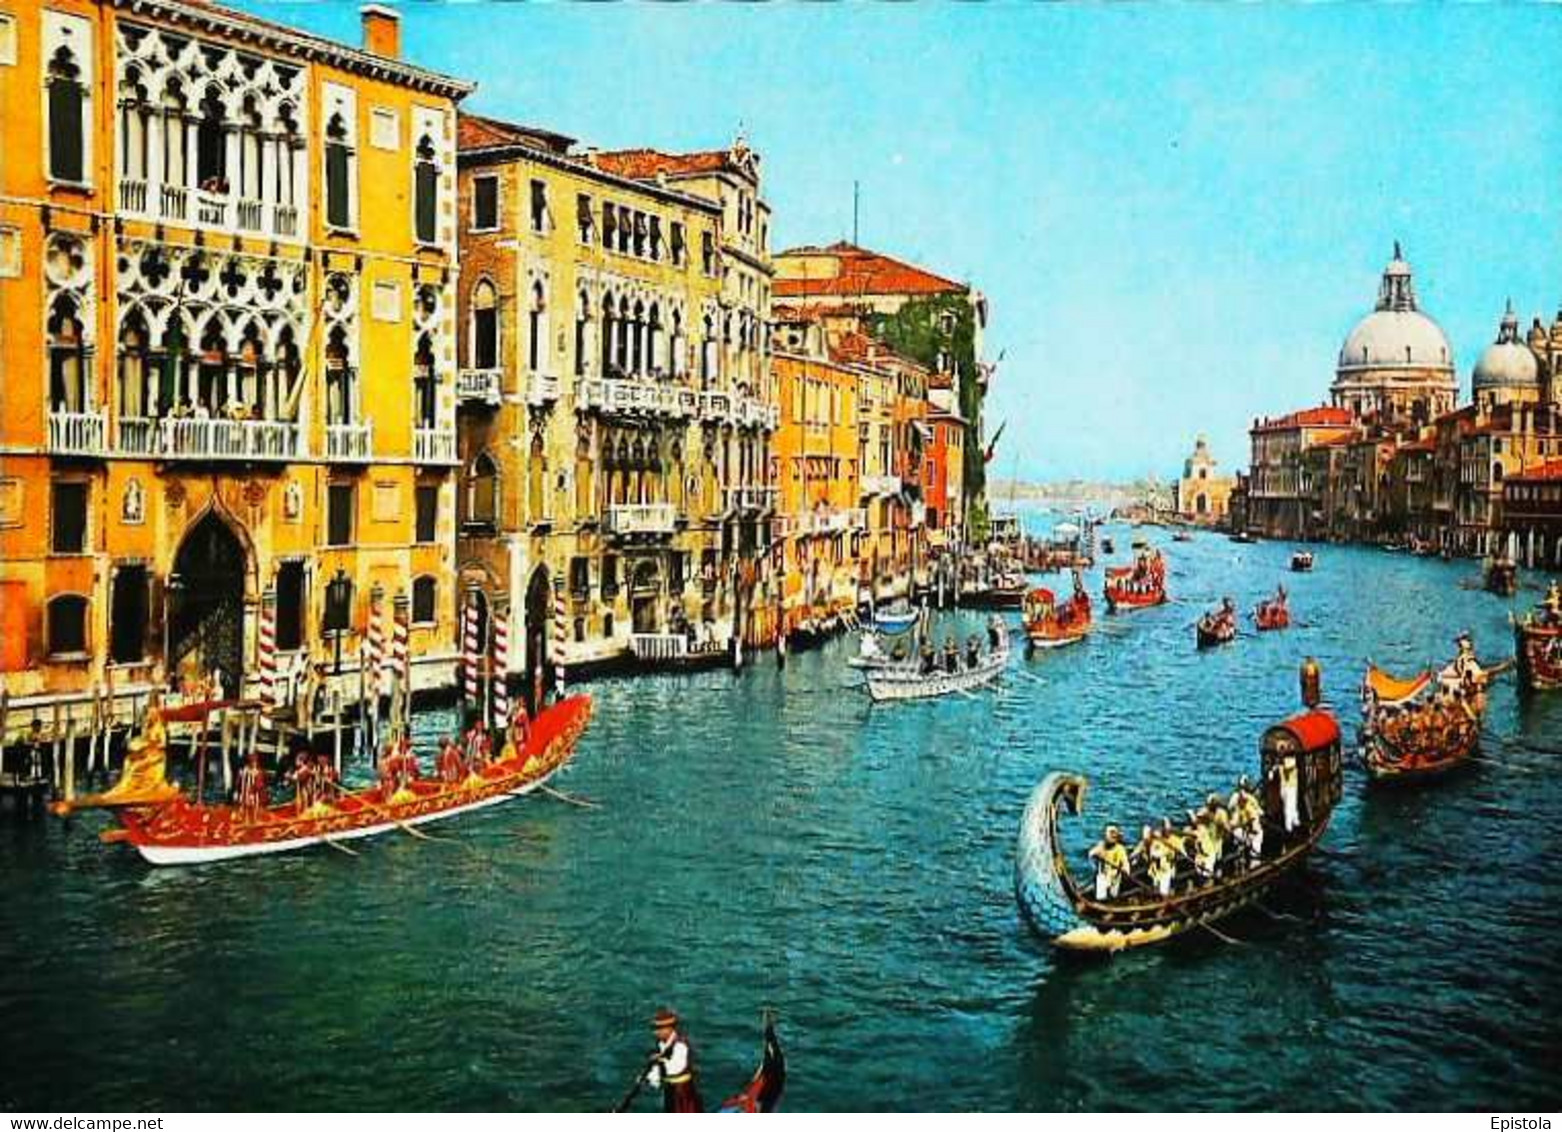 ► REGATA STORICA - Régate Historique Antique De Venise - VENEZIA - Regionale Spiele